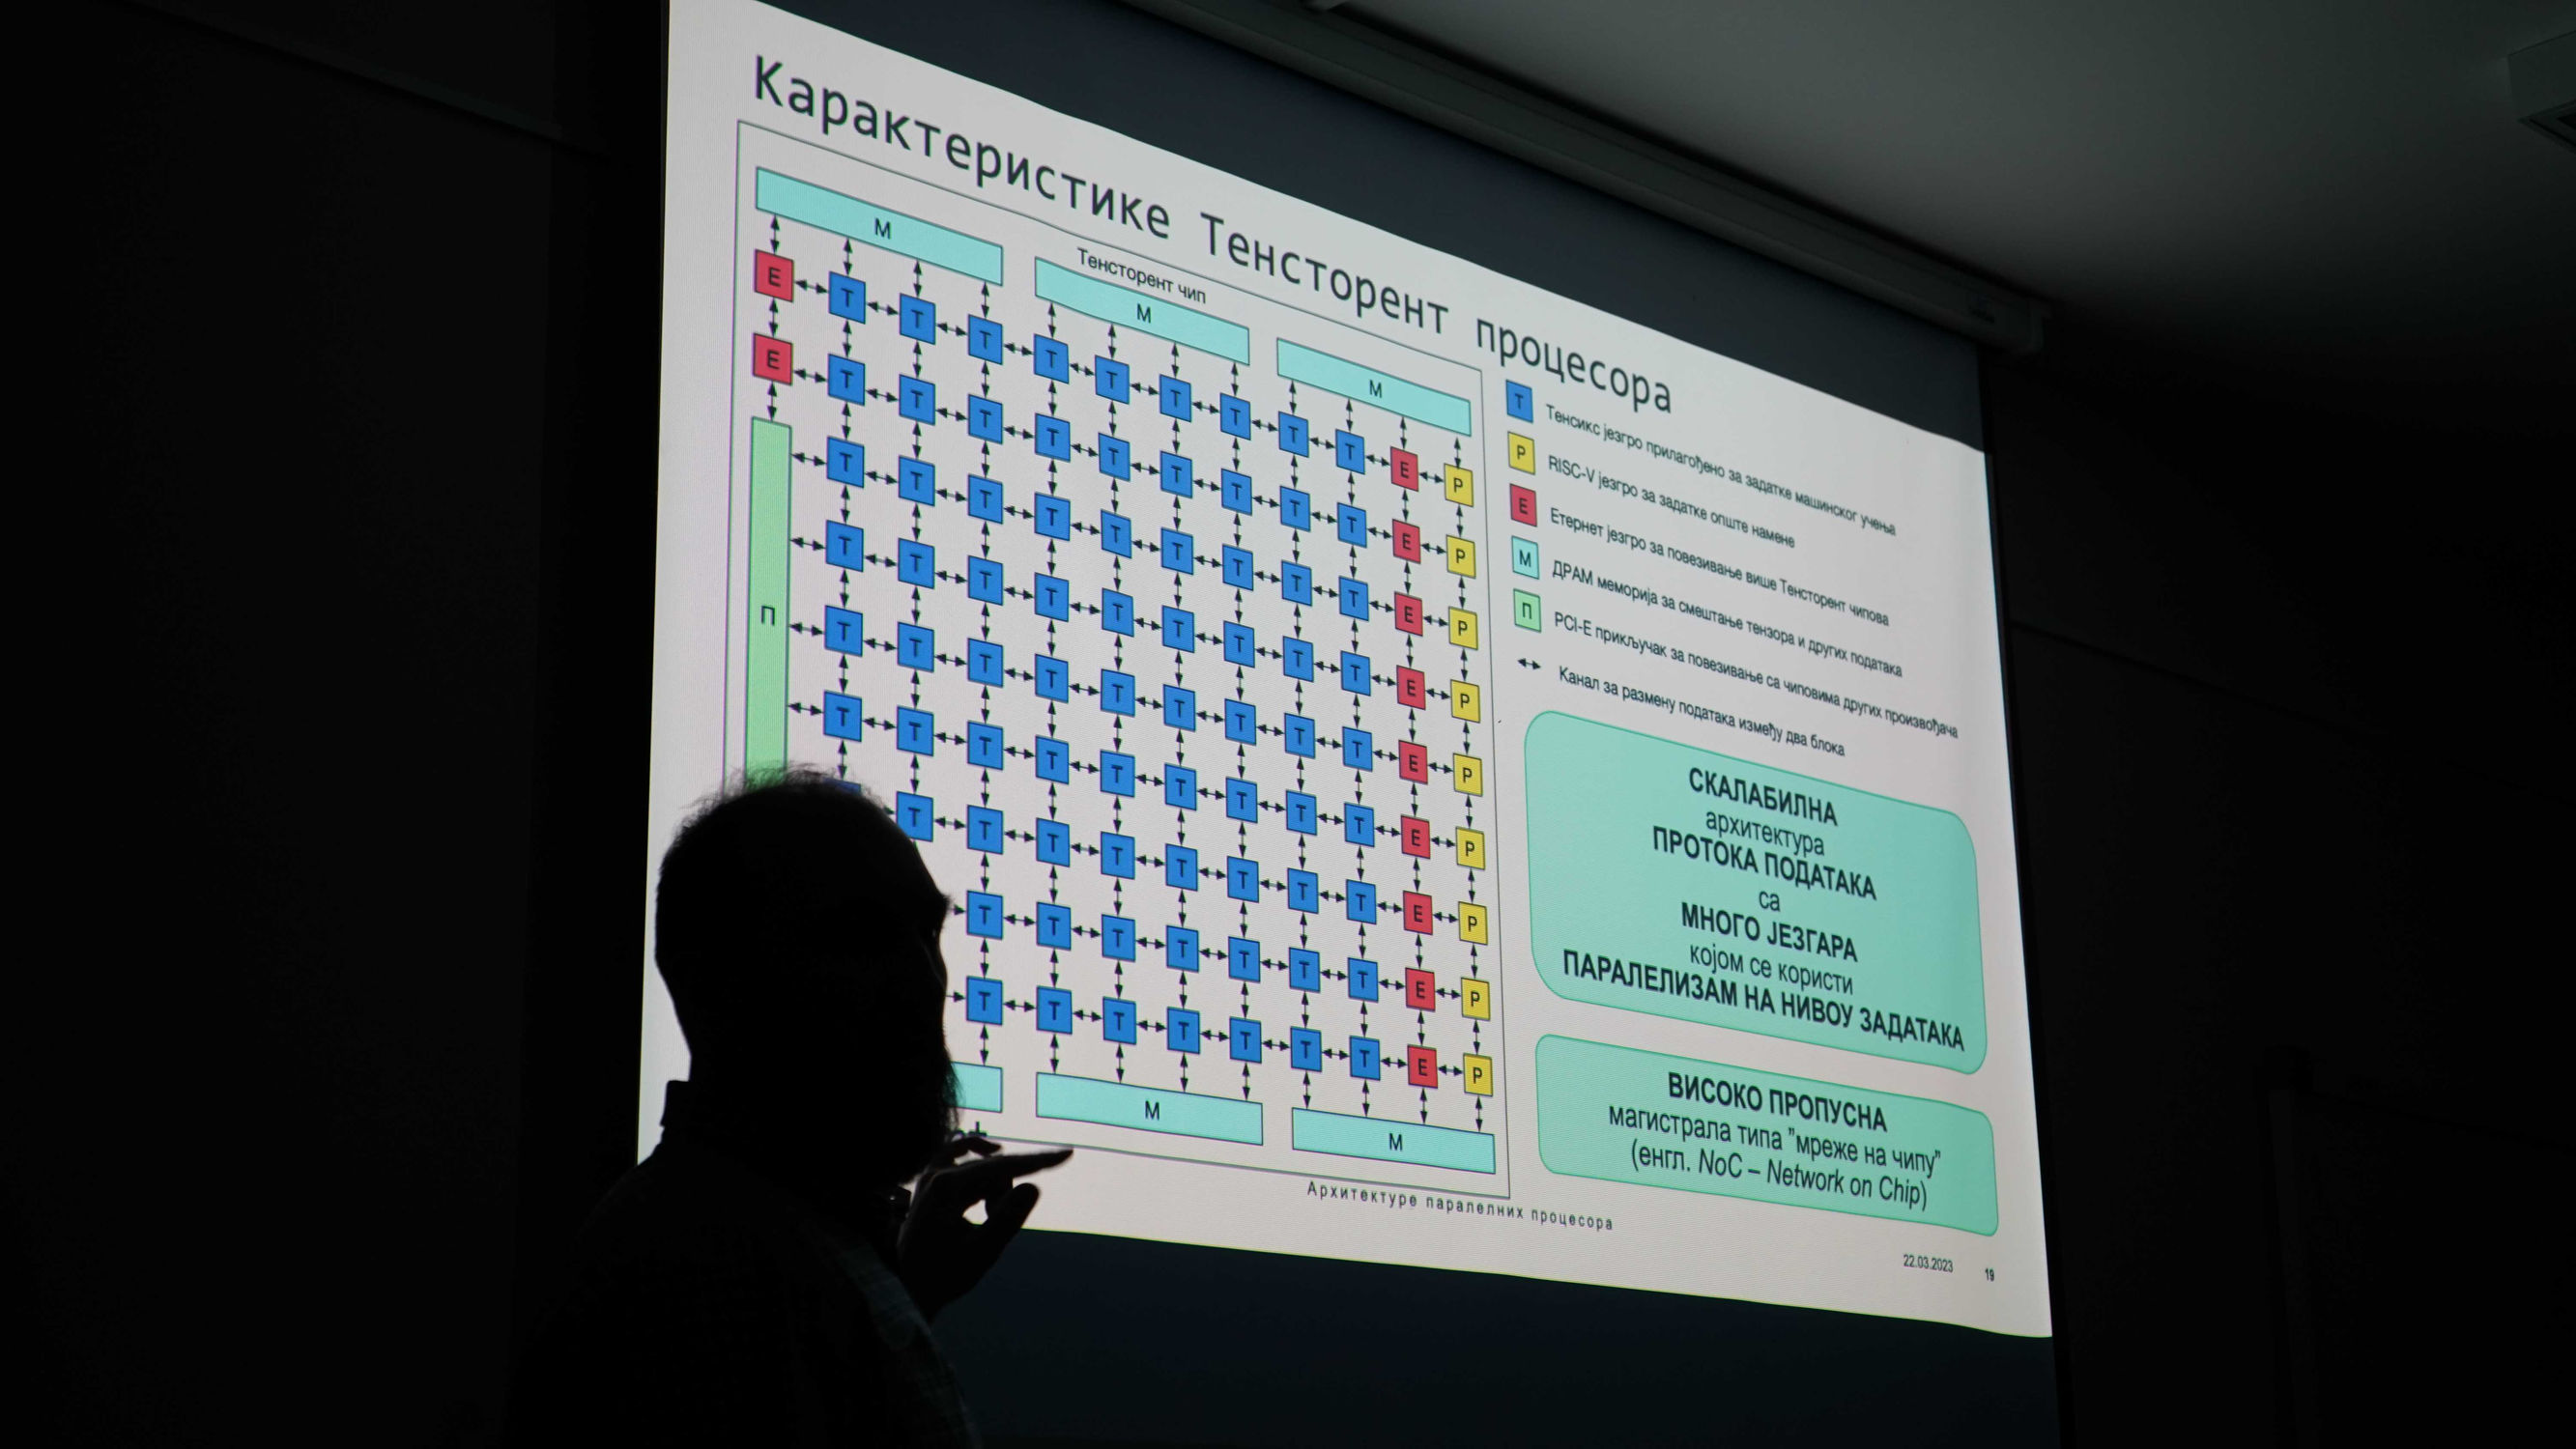 Radomir Jakovljević ispred slajda sa karakteristikama Tenstorrent procesora na predavanju iz arhitekture procesora namenjenih za mašinsko učenje.